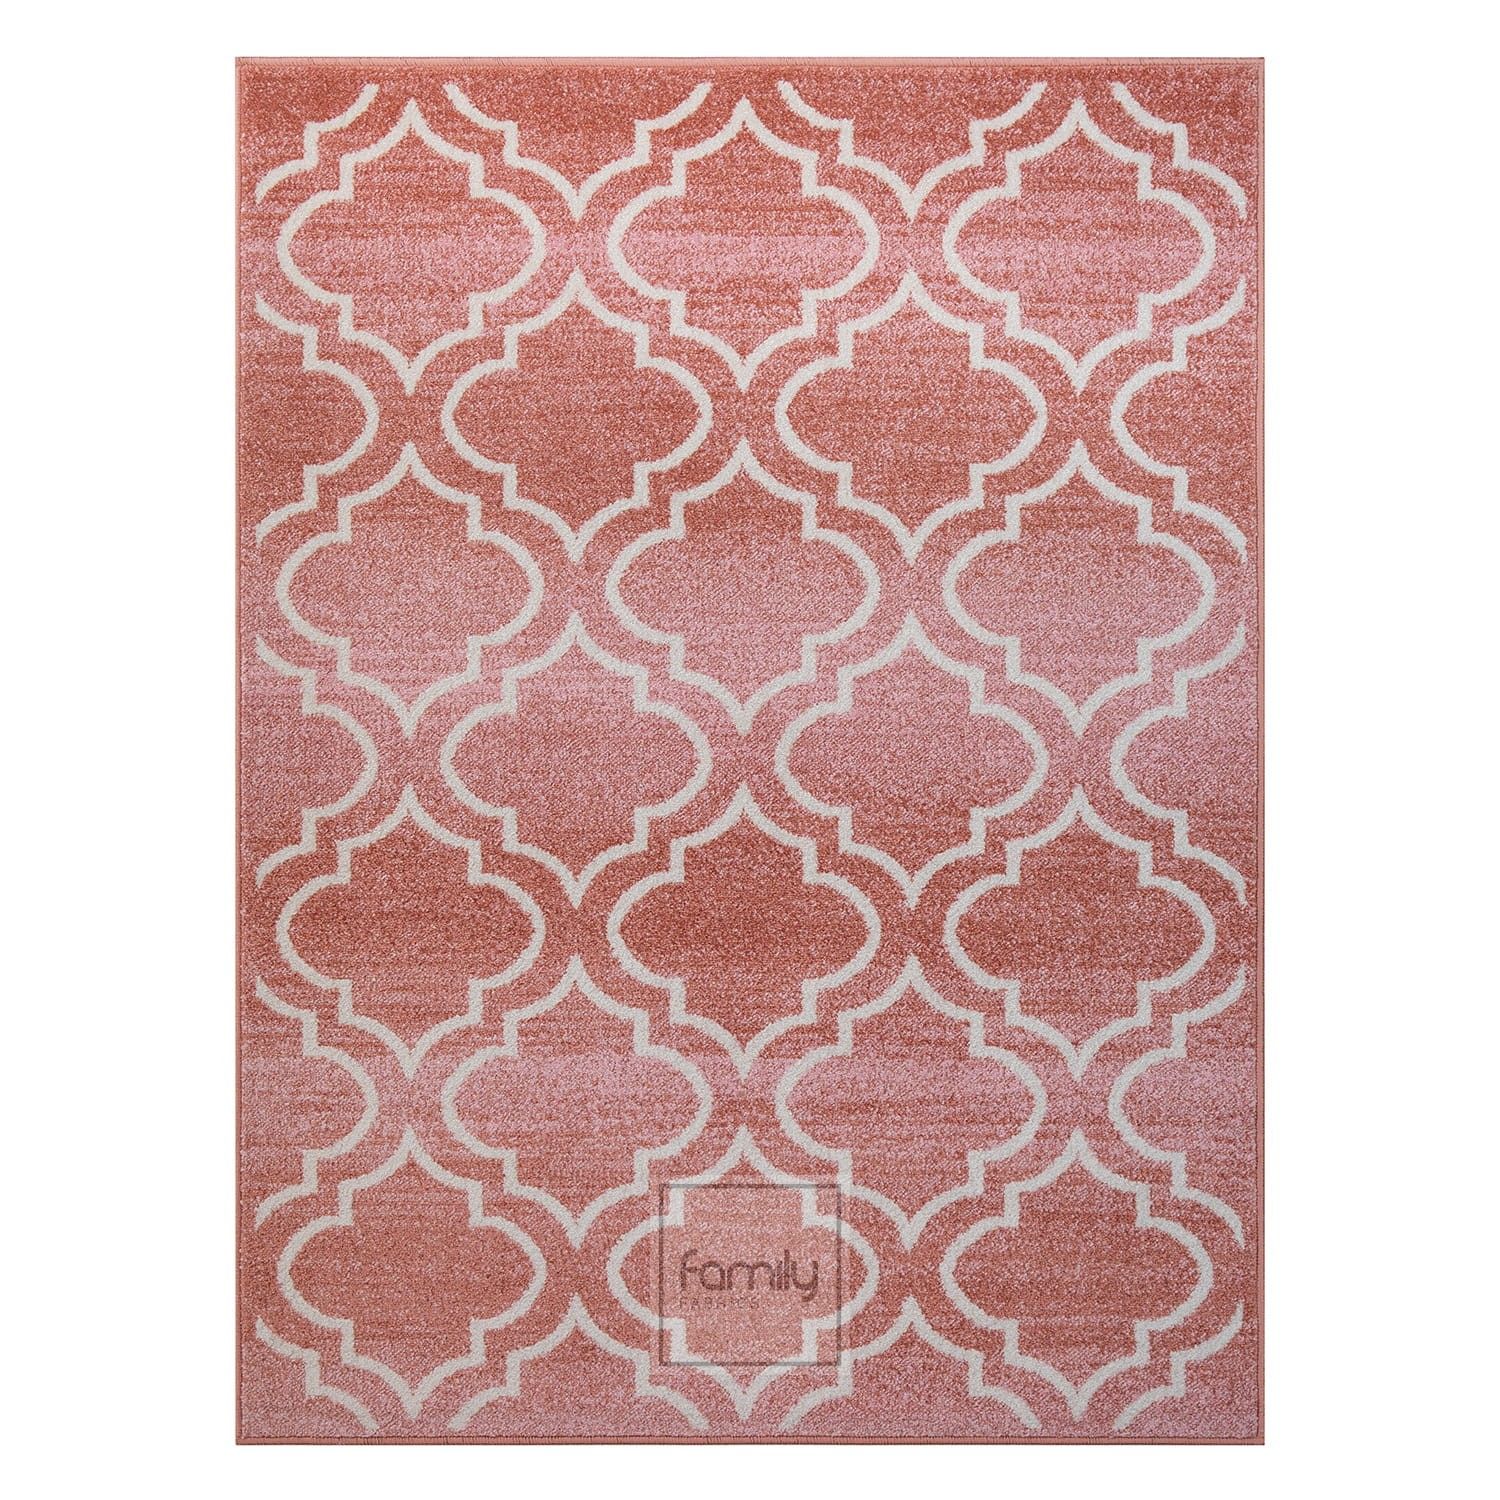 DomTextilu Originálny staroružový koberec v škandinávskom štýle 44390-207920